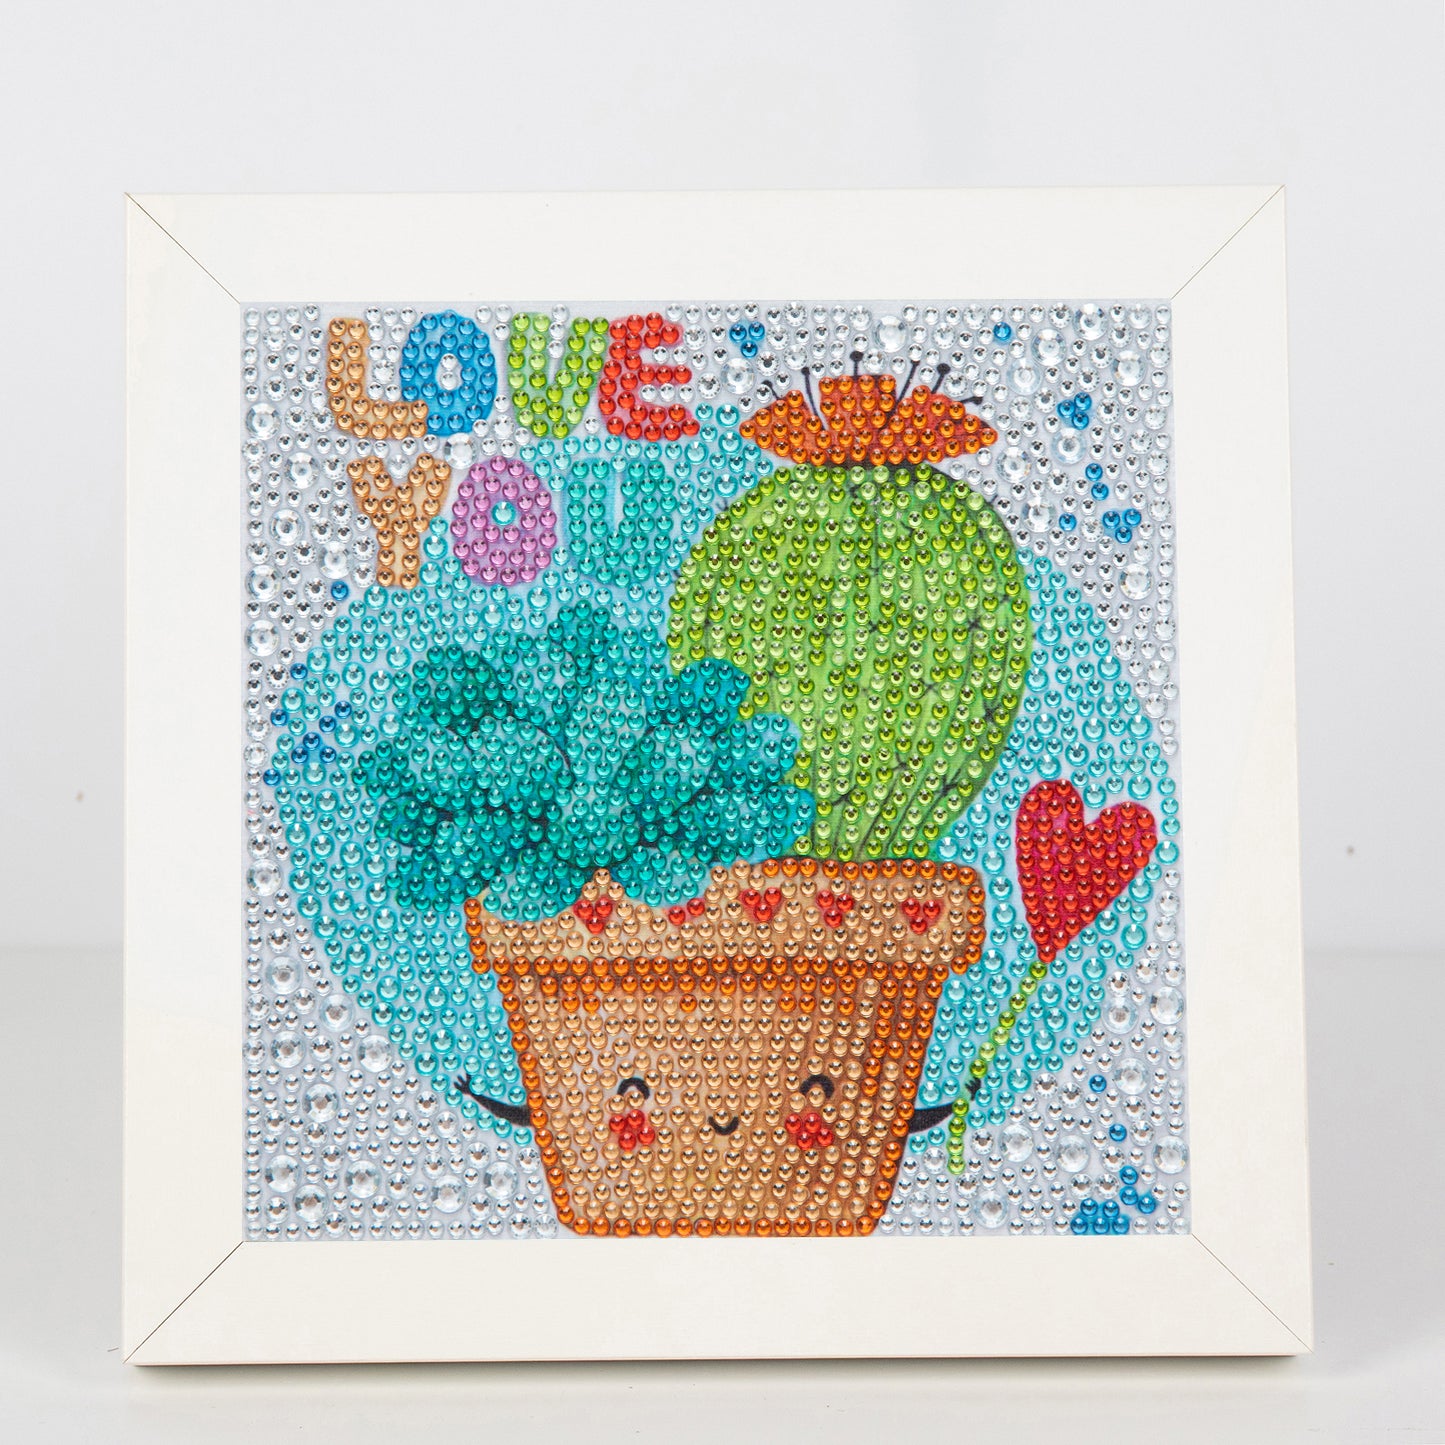 Kaktus | Crystal Strass Diamond Painting Kits für Kinder